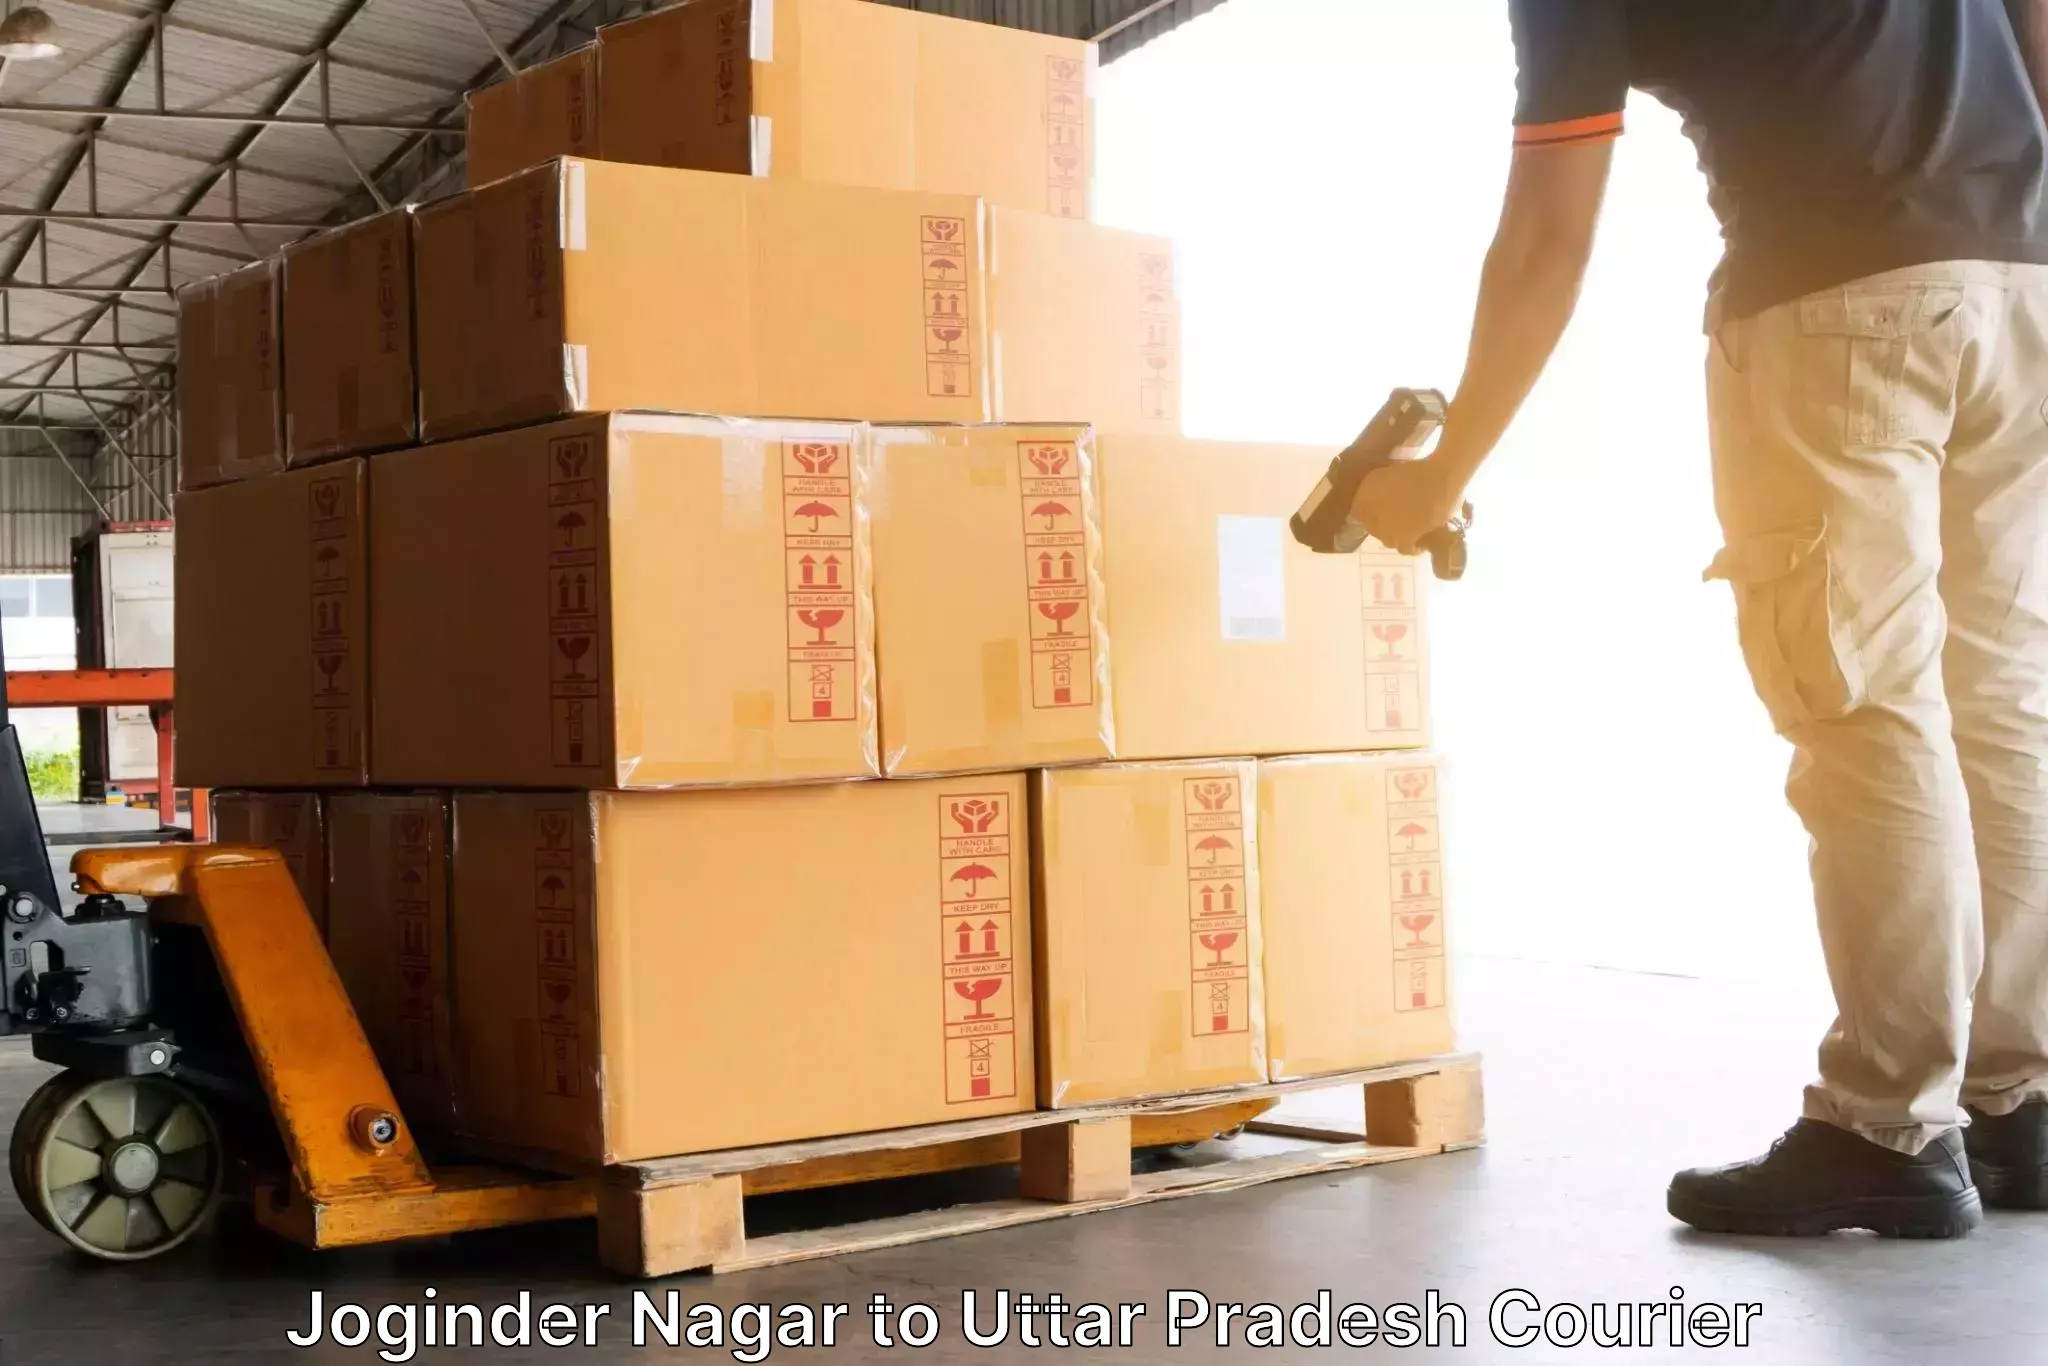 Customizable shipping options Joginder Nagar to Soraon